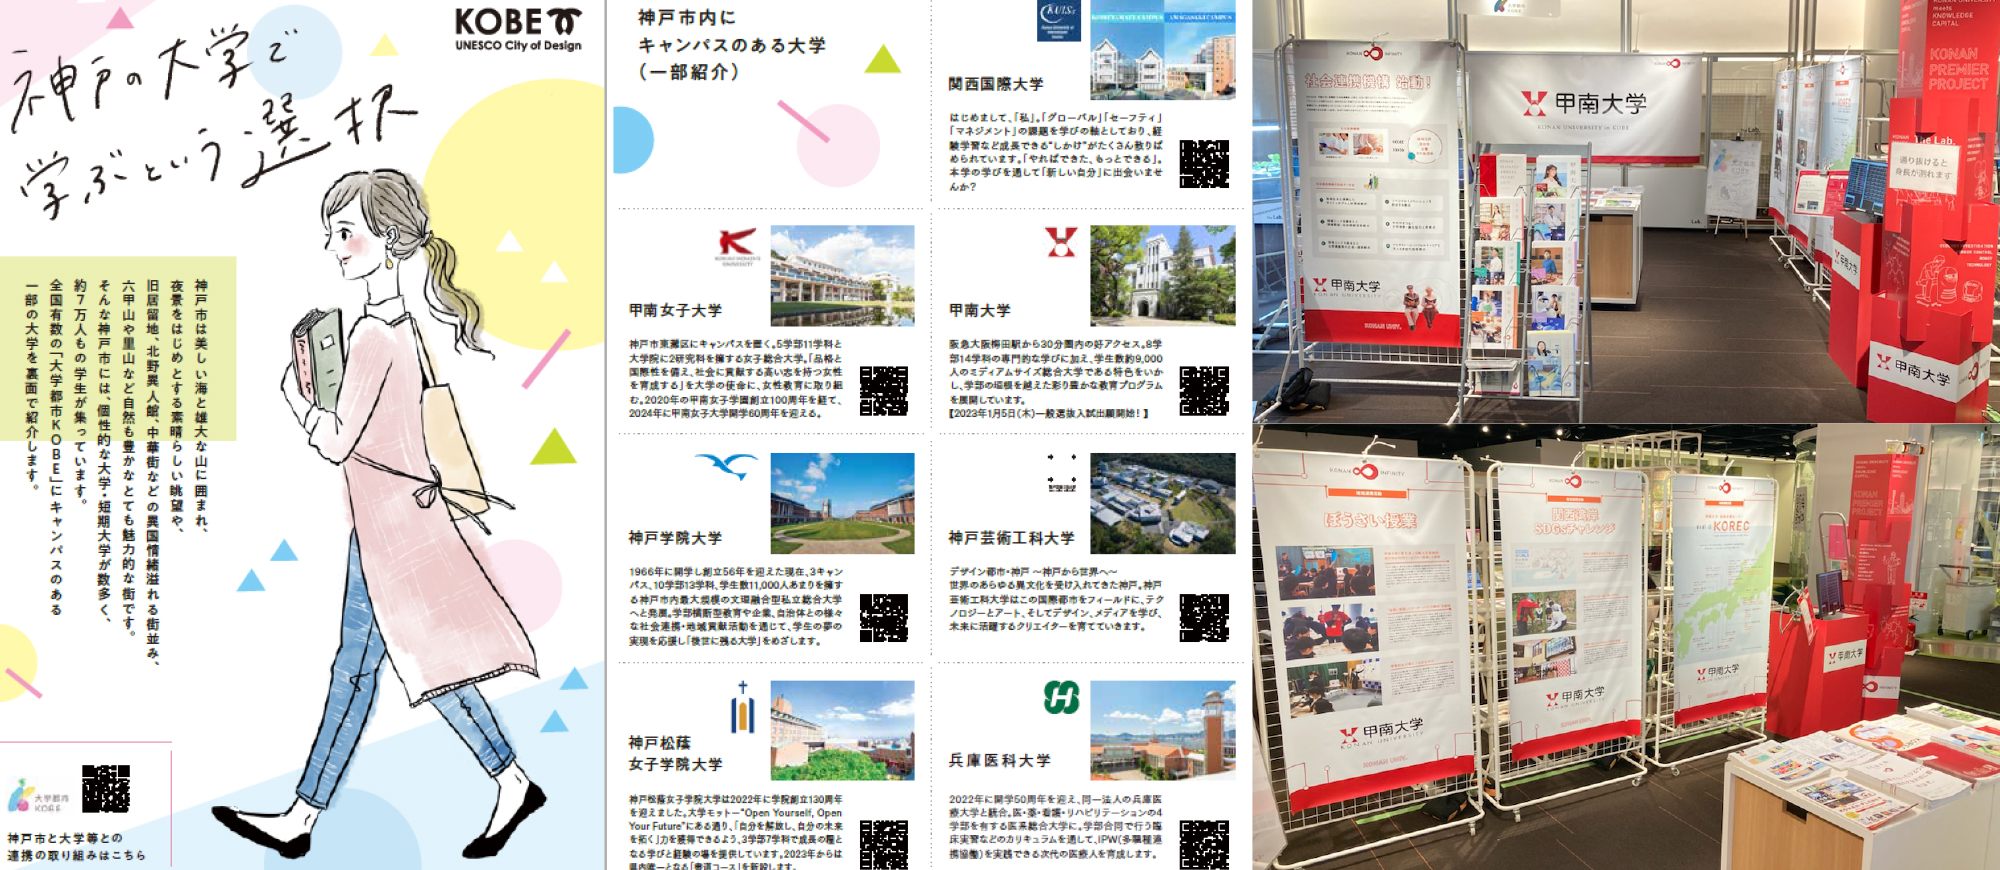 神戸の7大学による魅力発信プロジェクト